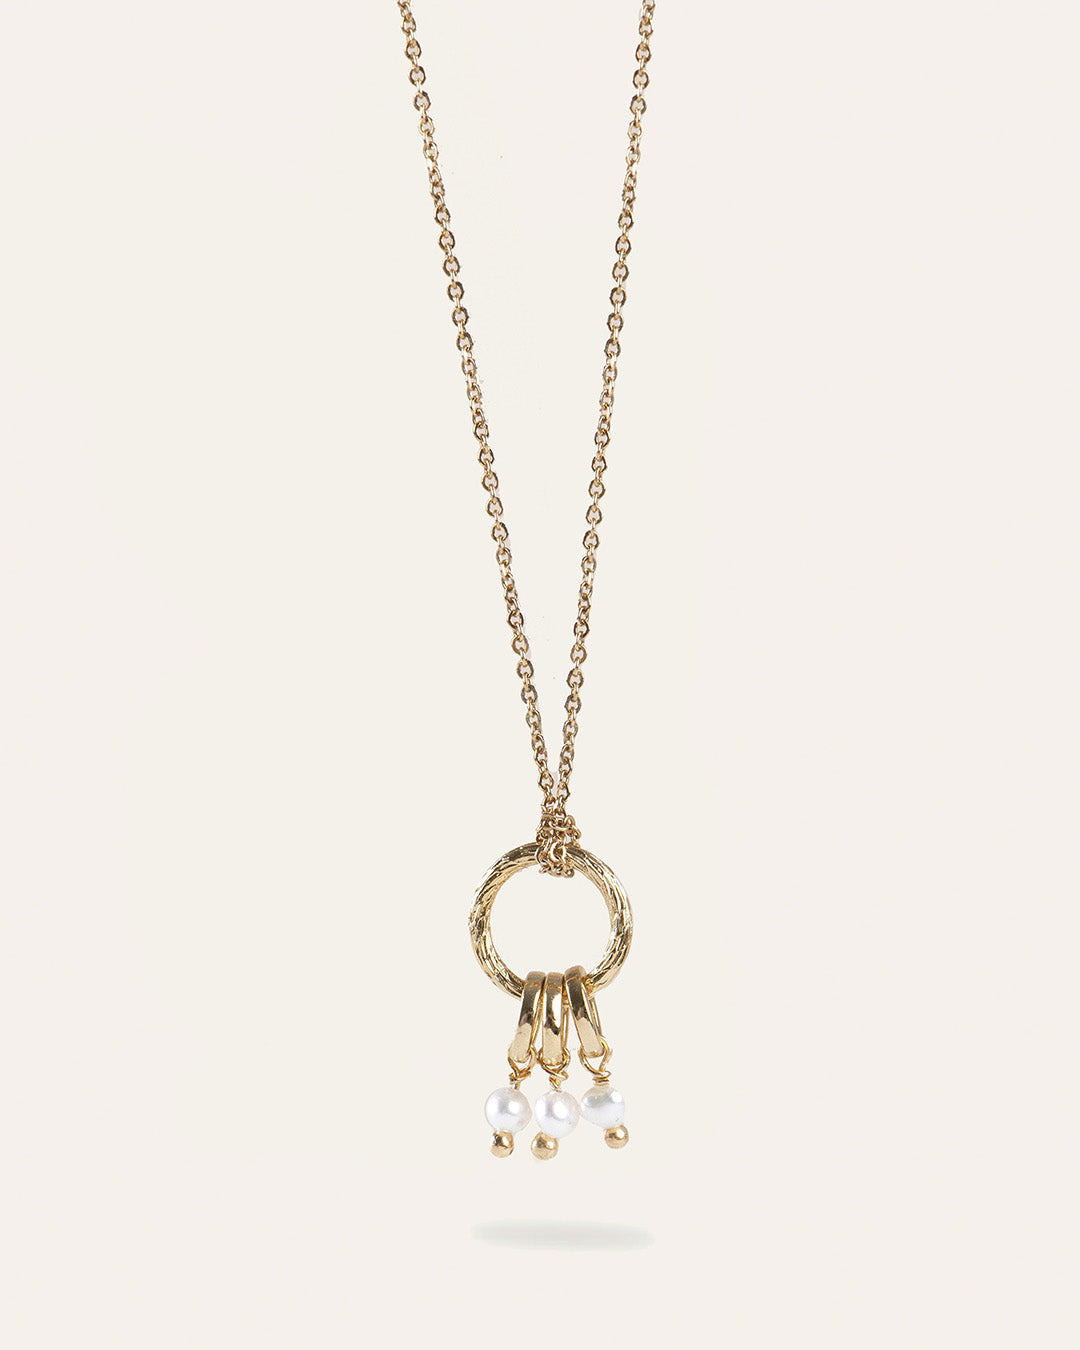 Collier en chaîne forçat avec un pendentif en anneau rayé, et trois anneaux pendants avec trois petites perles de culture made in France.